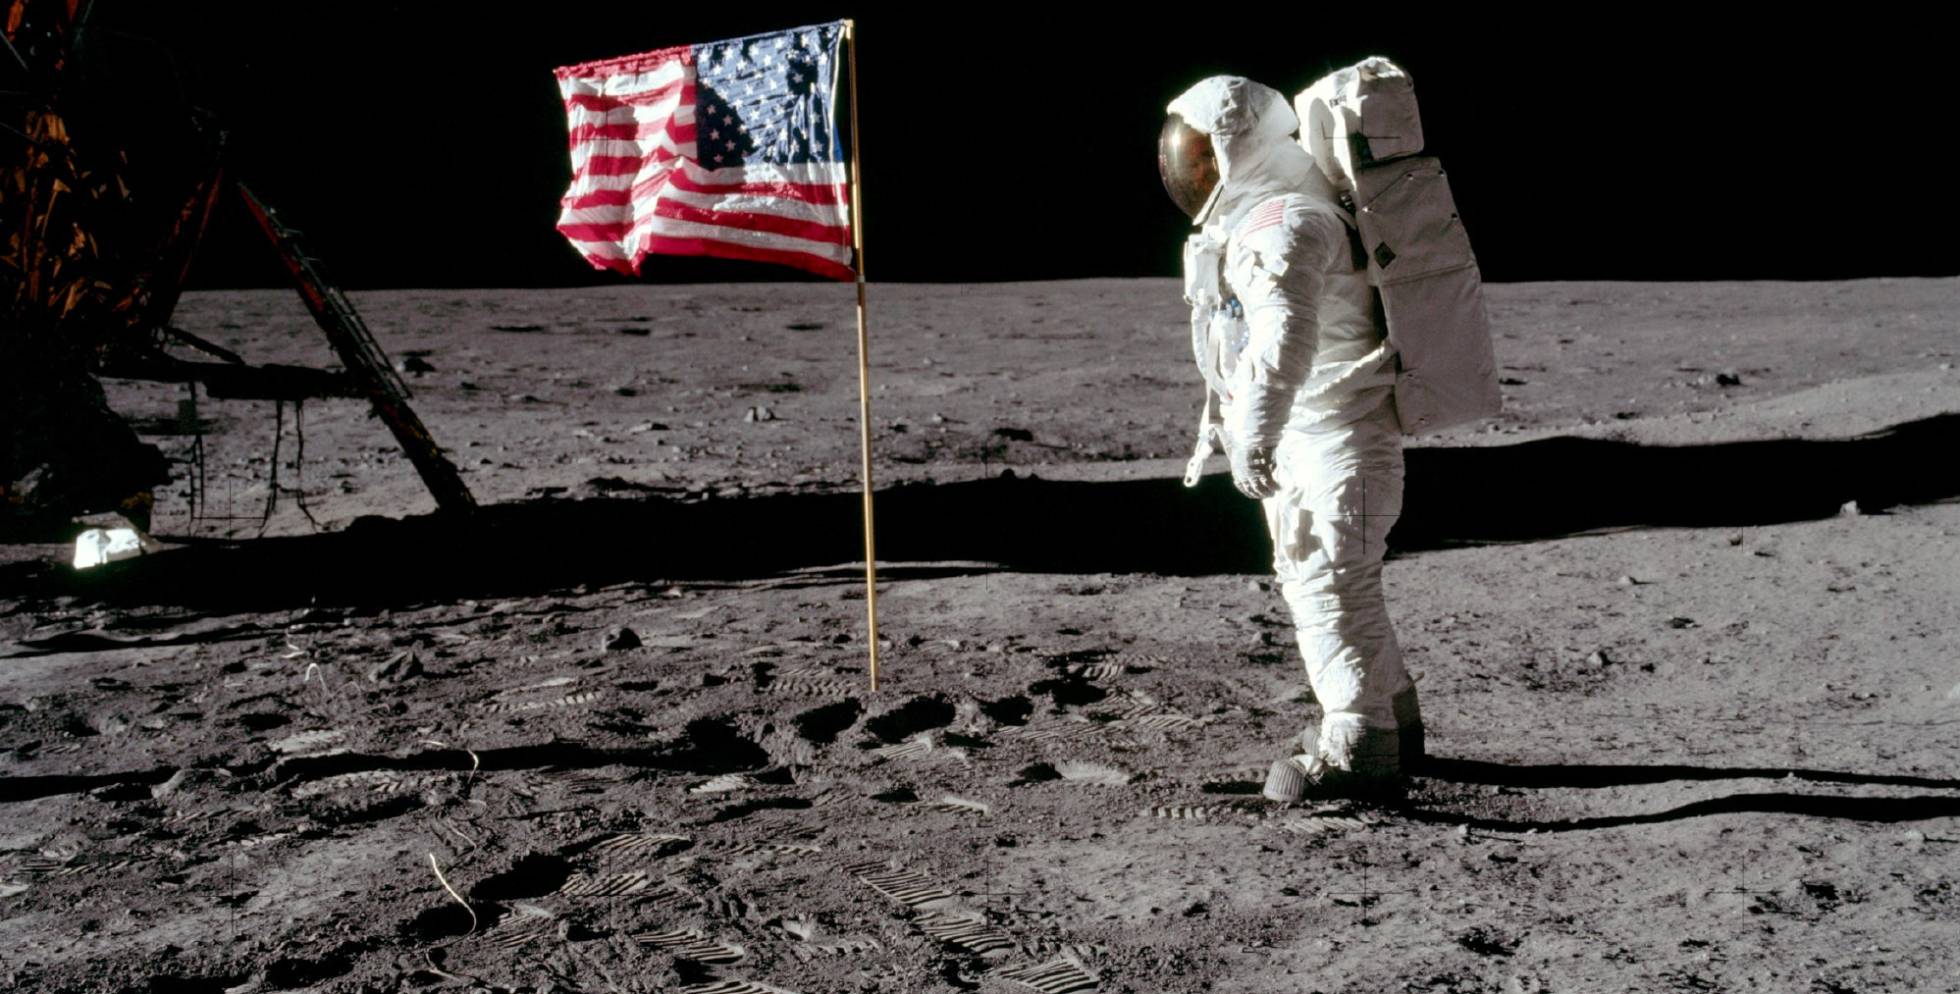 Fotos: Misión Espacial del Apolo 11: 50 años de la llegada a la Luna, en imágenes | Ciencia | EL PAÍS